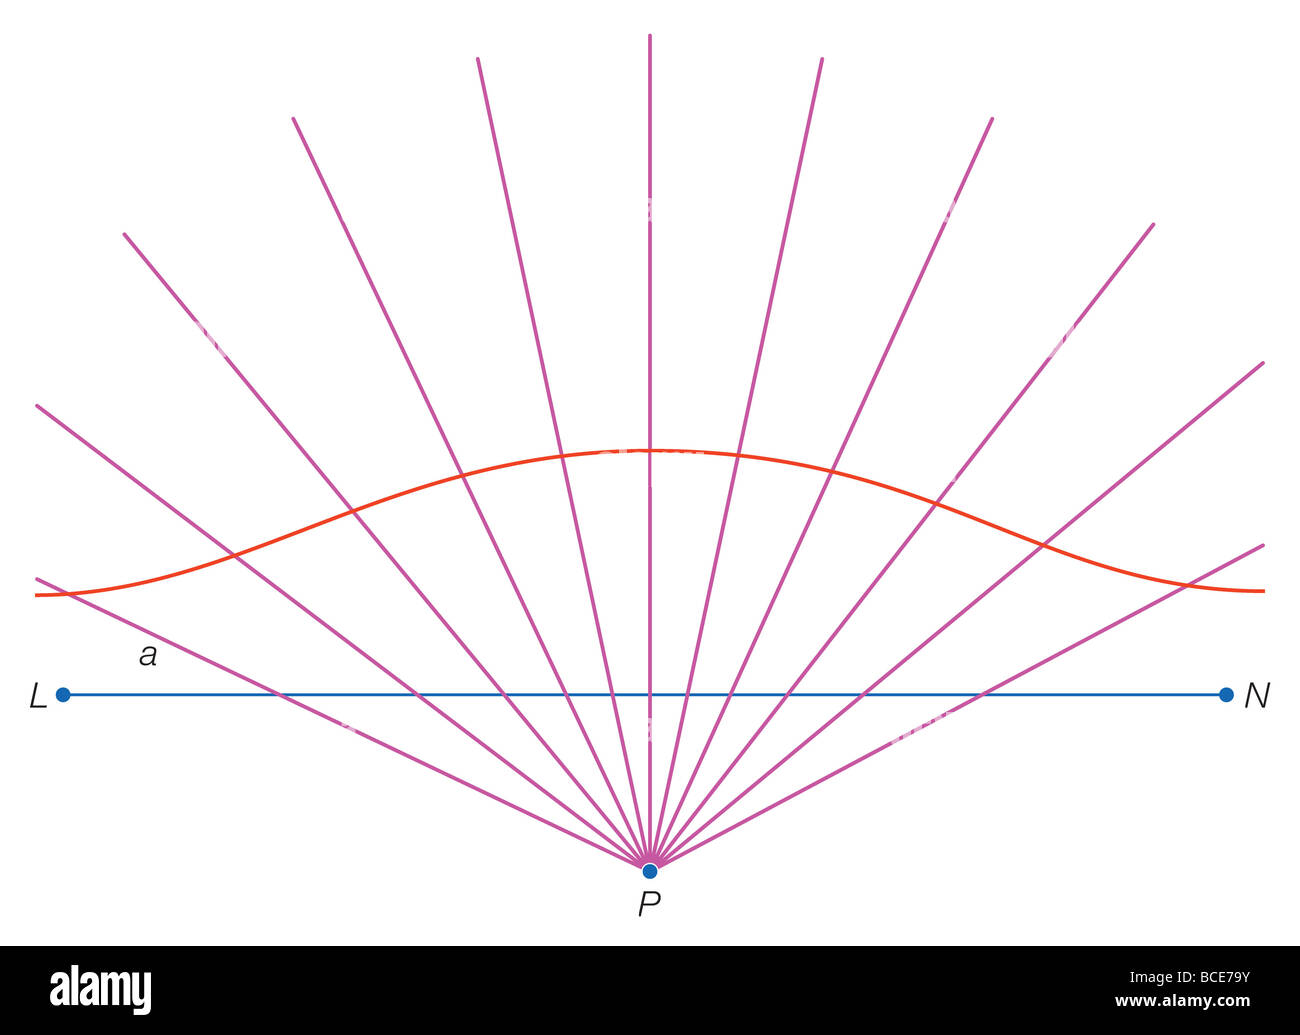 Una curva conchoid risultati da punti di collegamento tracciate a distanza standard a dalla linea LN su tutte le linee che si estendono dal punto P. Foto Stock